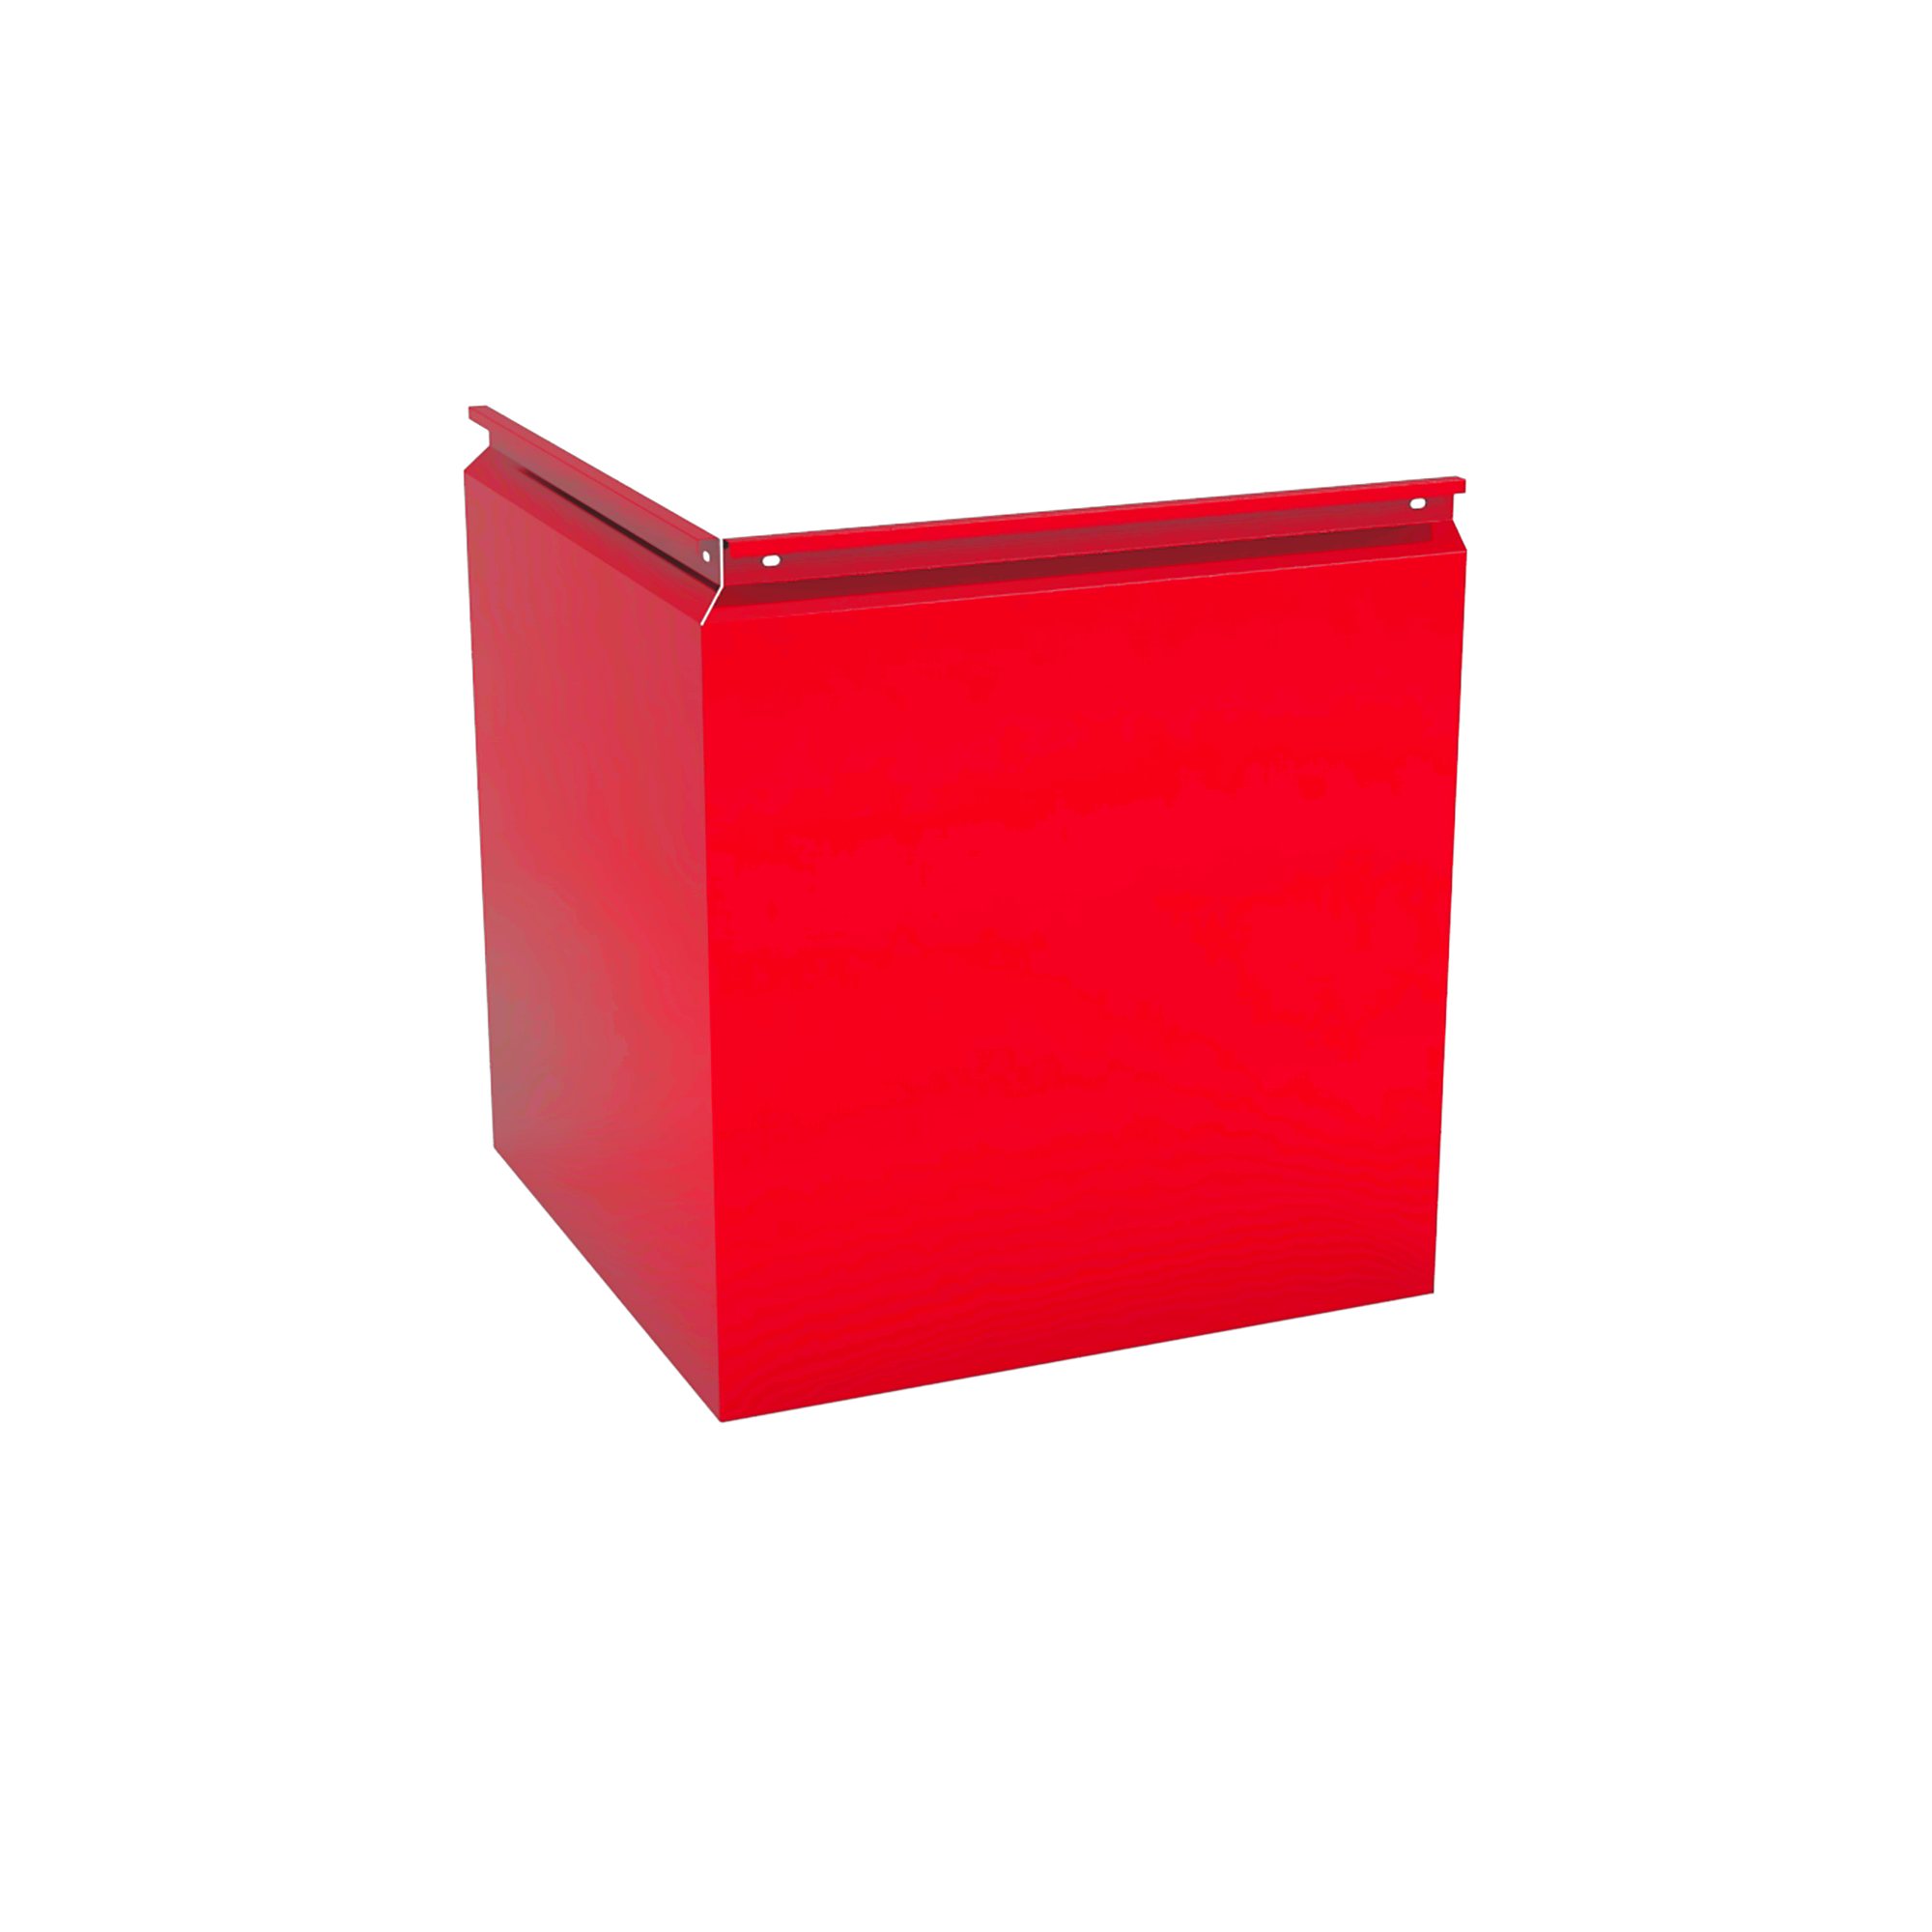 Фасадная кассета Угловая 550 Транспортный красный 0,65 мм Фасадные кассеты Кровля Сервис